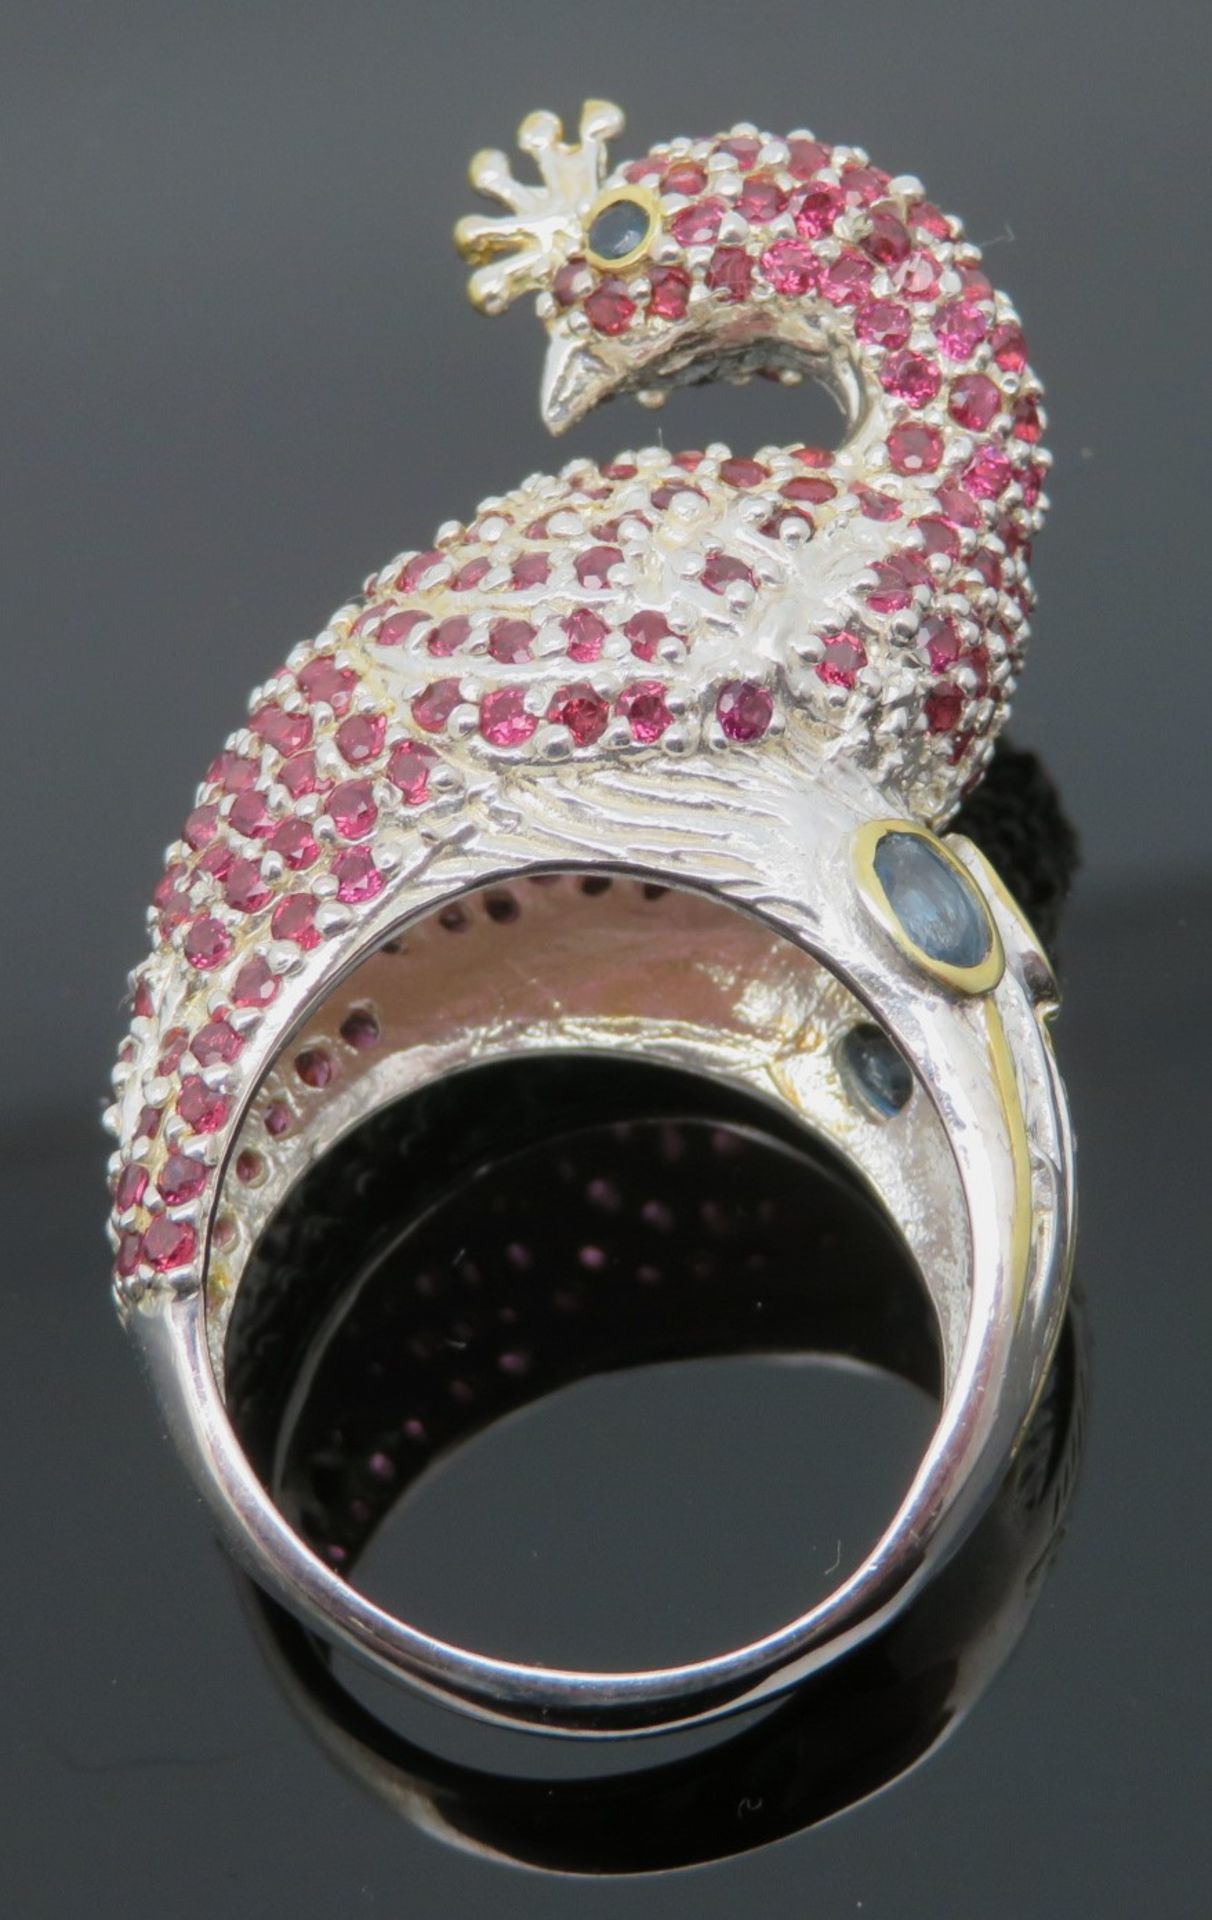 Fantasievoller Statement-Ring in Gestalt eines Pfaus, reich besetzt mit facettierten Rubinen, Augen - Image 2 of 2